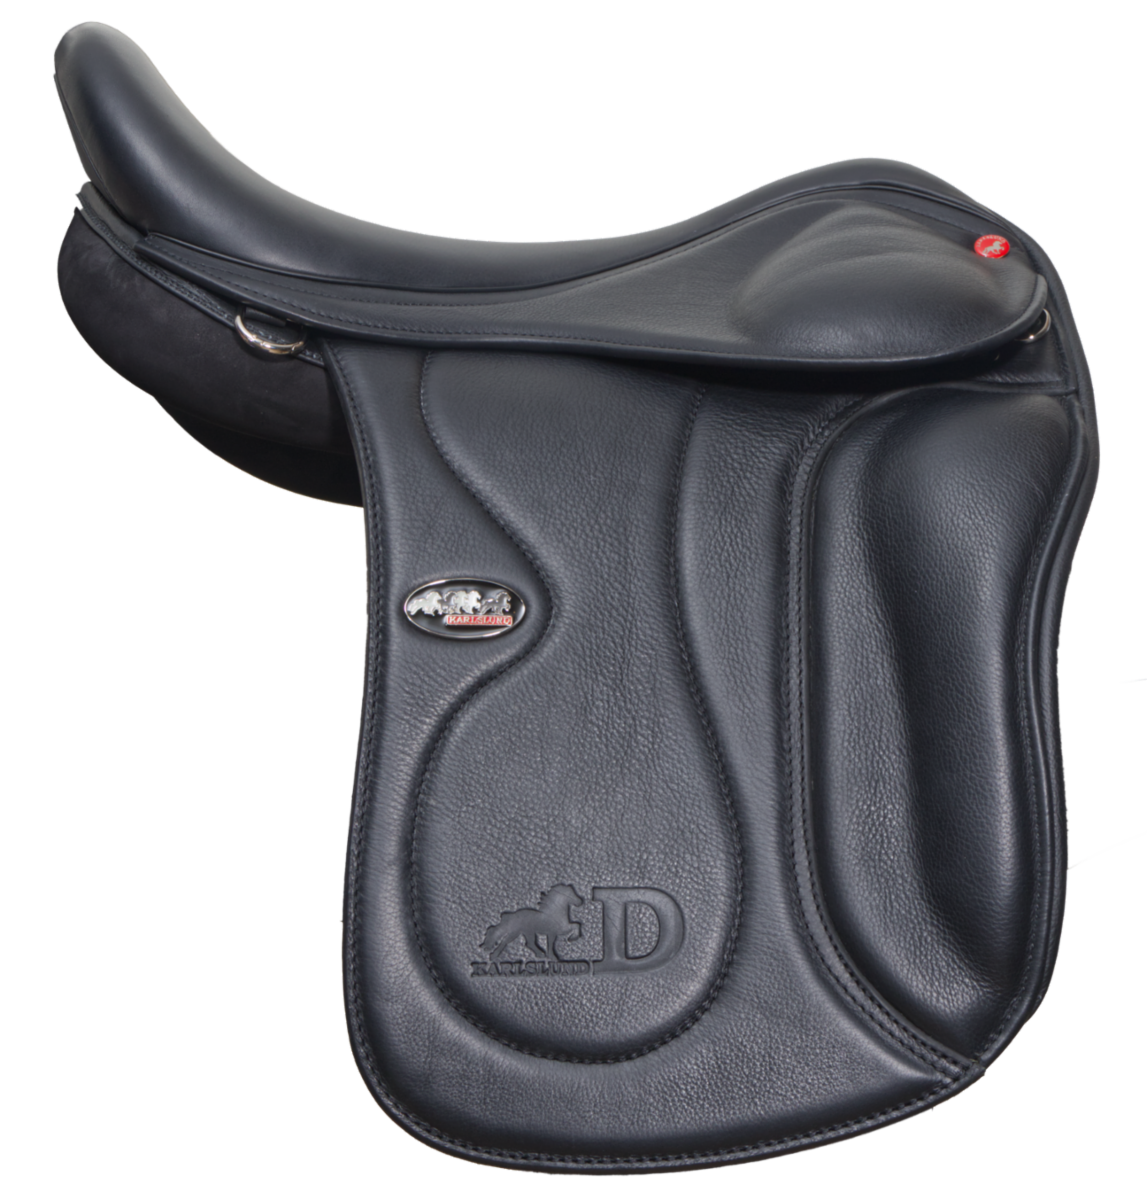 D saddle with SuperFit, narrow/medium